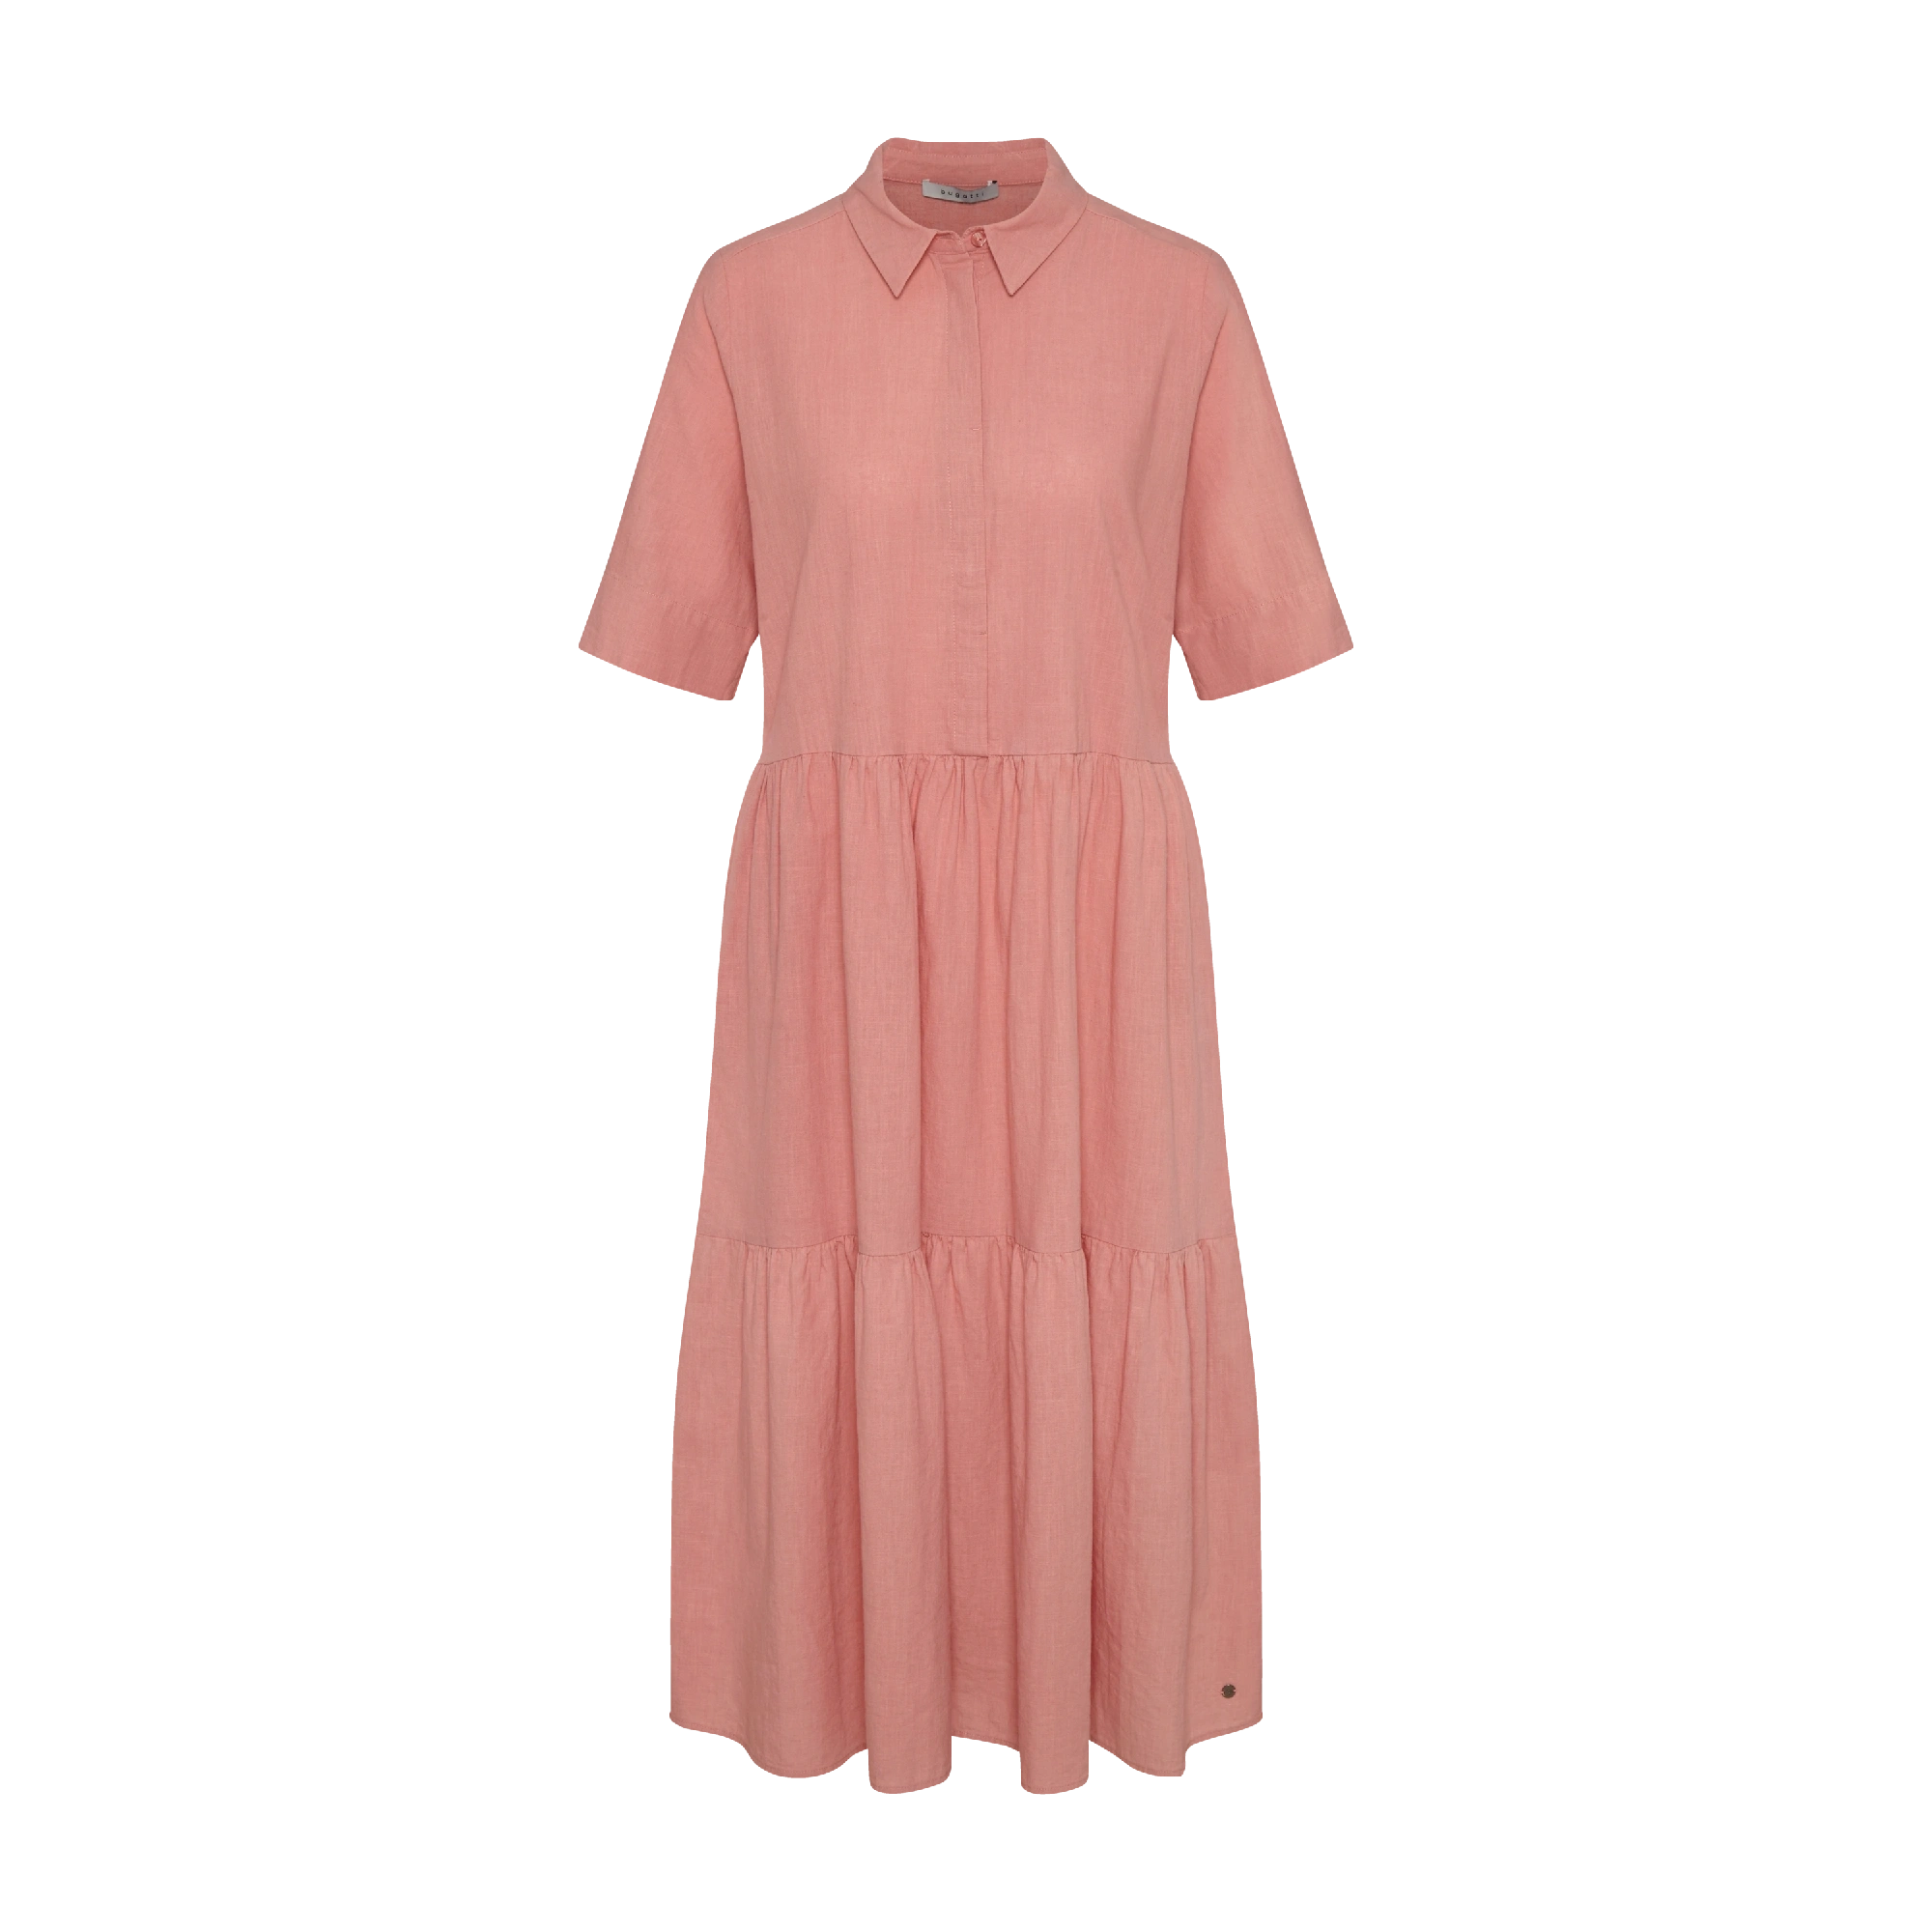 Elegantes Kleid mit kurzen Ärmeln und Hemdkragen in rose